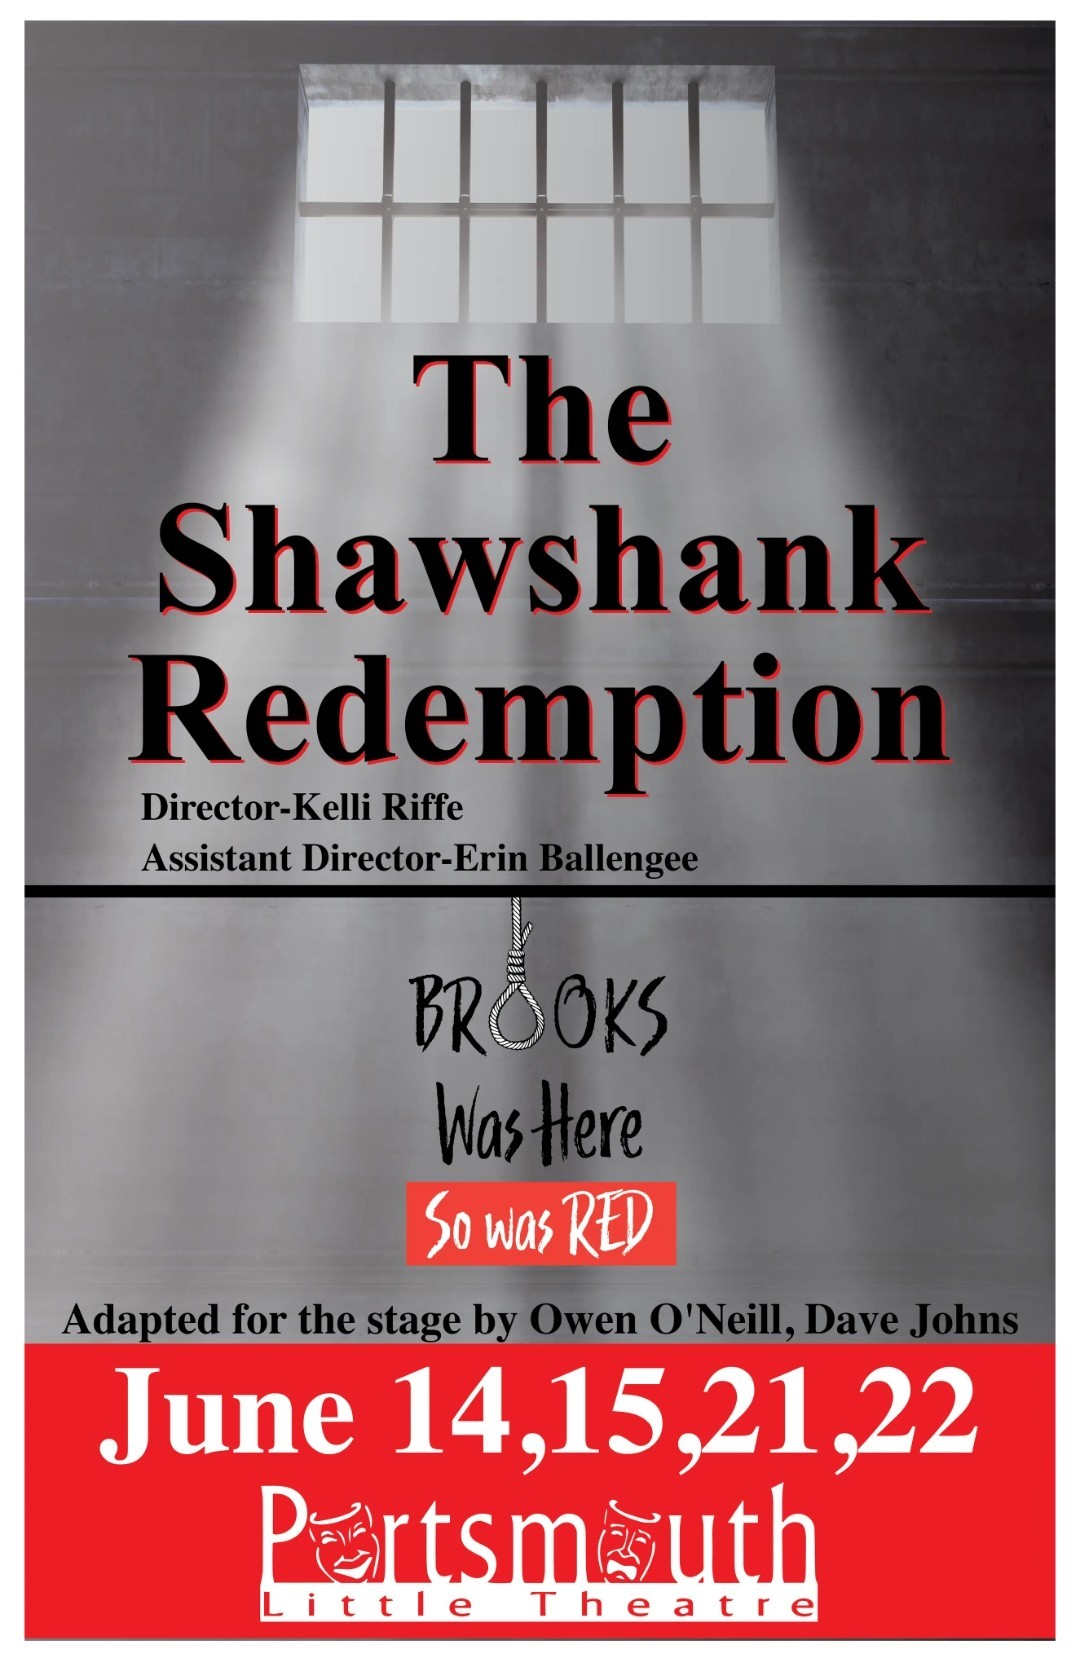 Shawshank Redemption  on jun. 14, 19:30@Portsmouth Little Theatre - Elegir asientoCompra entradas y obtén información enPortsmouth Little Theatre 